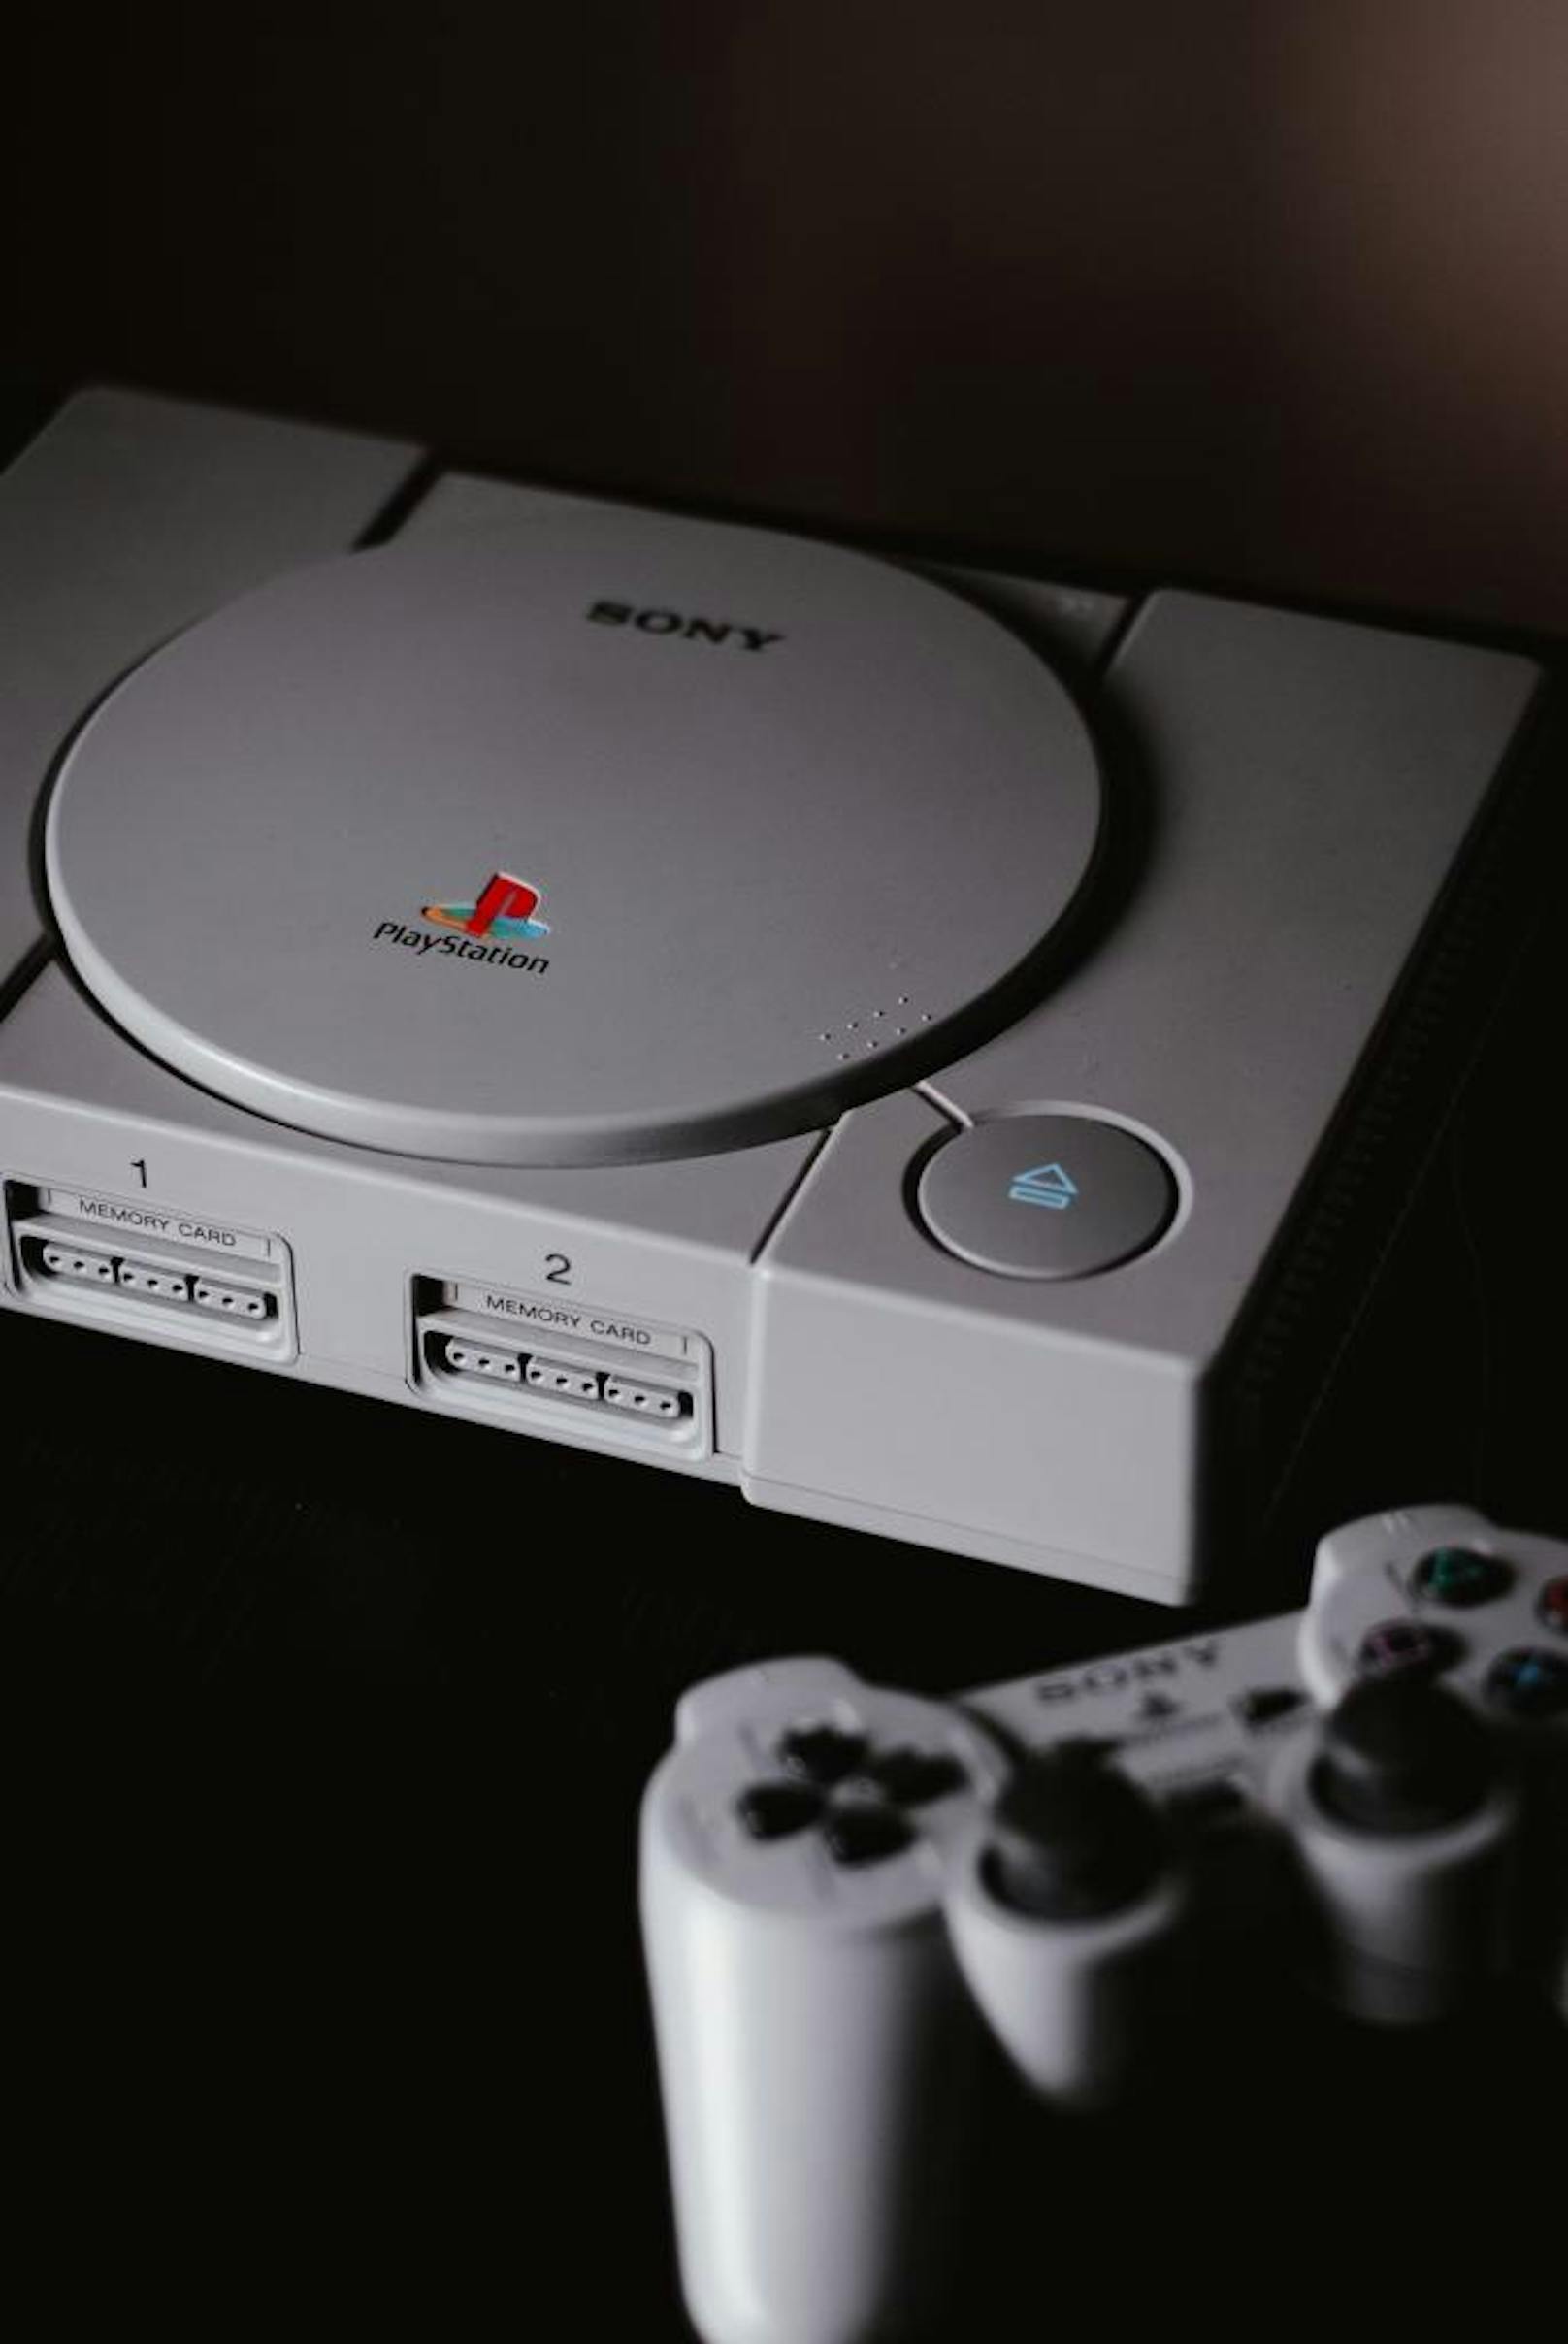 12 Jahre lang zählte die 1994 vorgestellte PlayStation zu den beliebtesten Spielekonsolen der Welt. Mit 104,25 Millionen verkauften Exemplare weltweit konnte ihr Erfolg nur von der PlayStation 2 übertroffen werden. Ein wesentlicher Schlüssel dazu war die Verwendung von CDs, die mehr Speicherplatz als Spielemodule boten, und Kultspiele wie Metal Gear Solid, Resident Evil 2 und Ridge Racer.